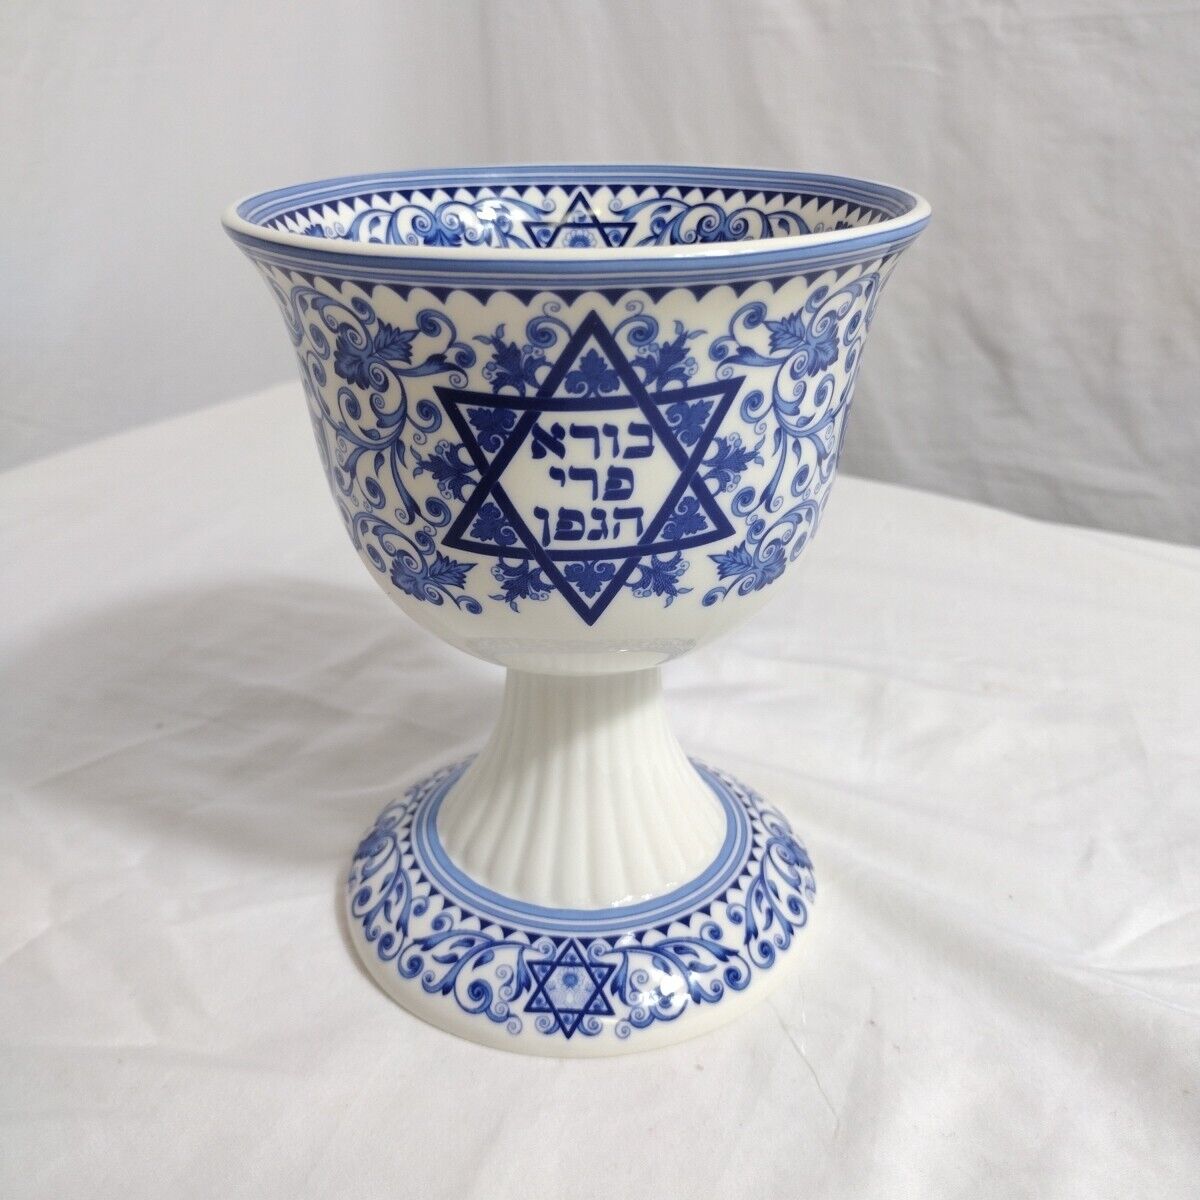 Spode Judaica Kiddush Cup 6 Oz Made of Fine Porcelain